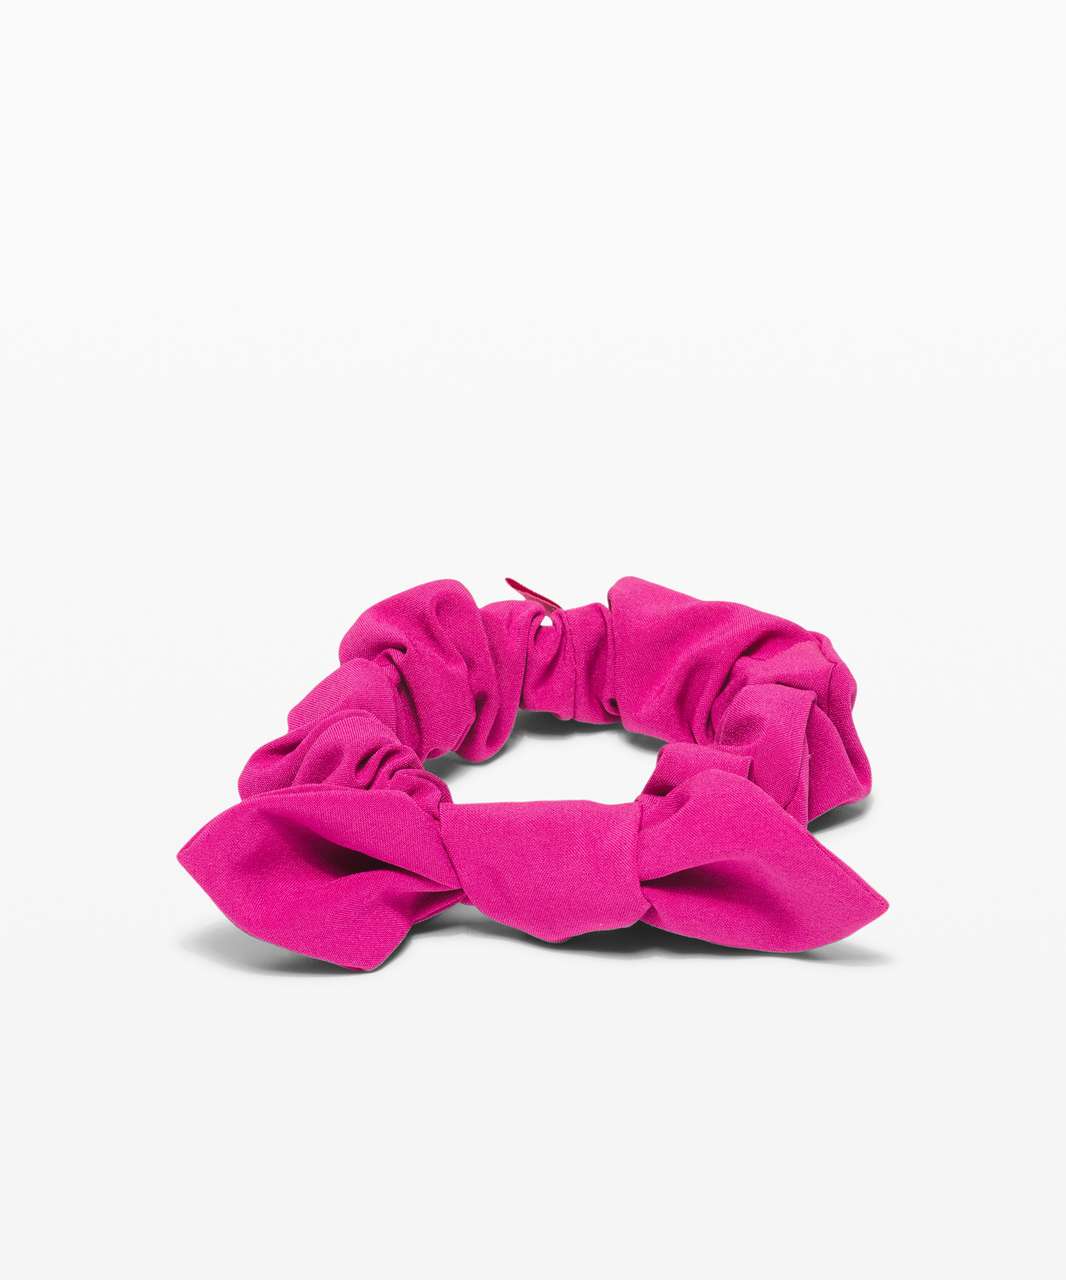 Lululemon Uplifting Scrunchie *Bow - Ripened Raspberry